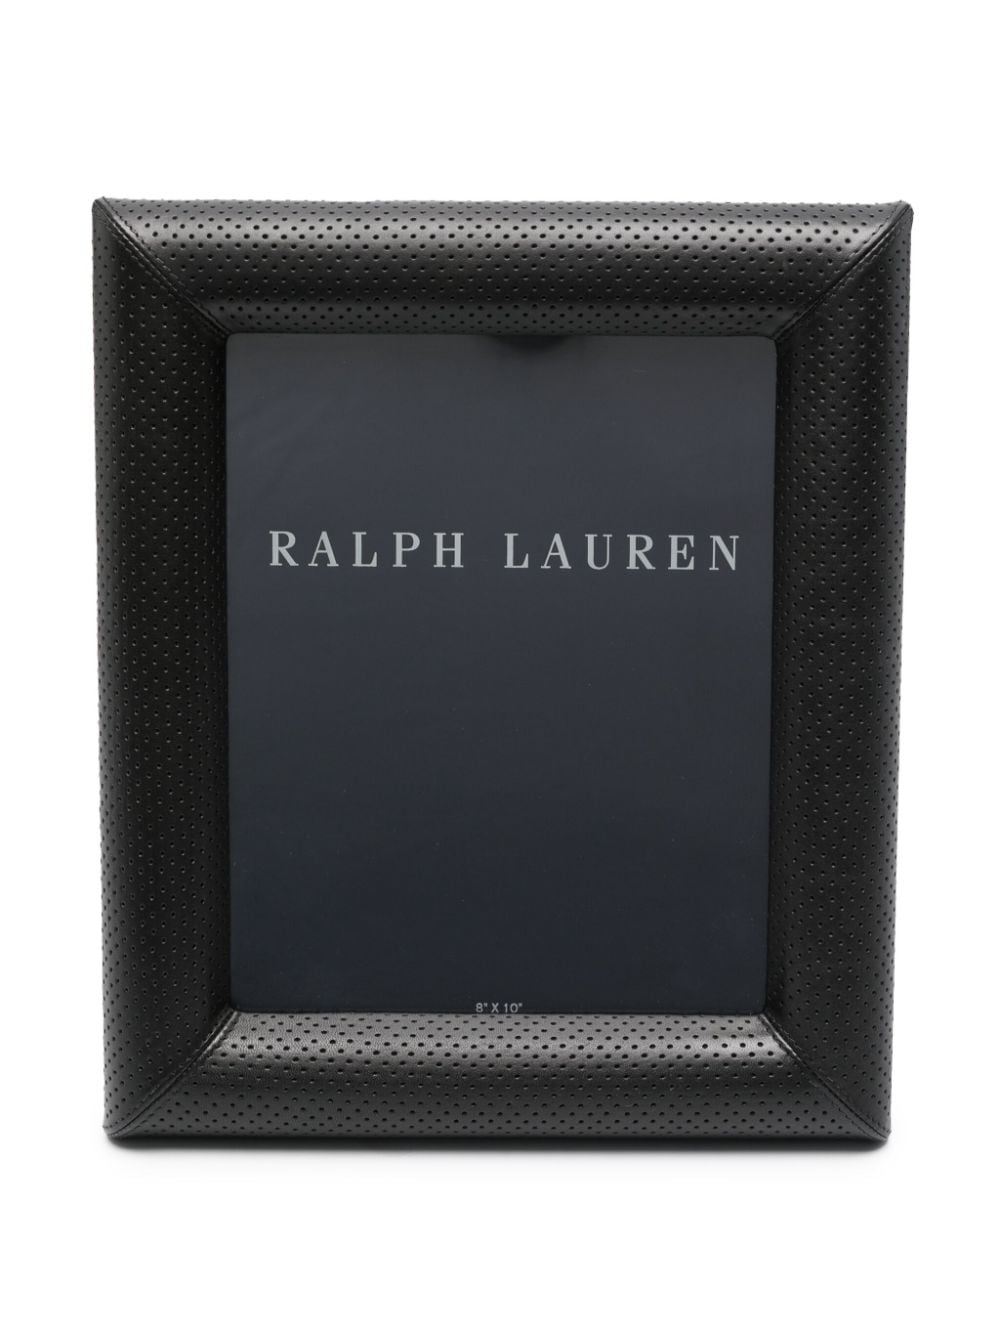 Ralph Lauren Home Durham perforated frame - Black von Ralph Lauren Home